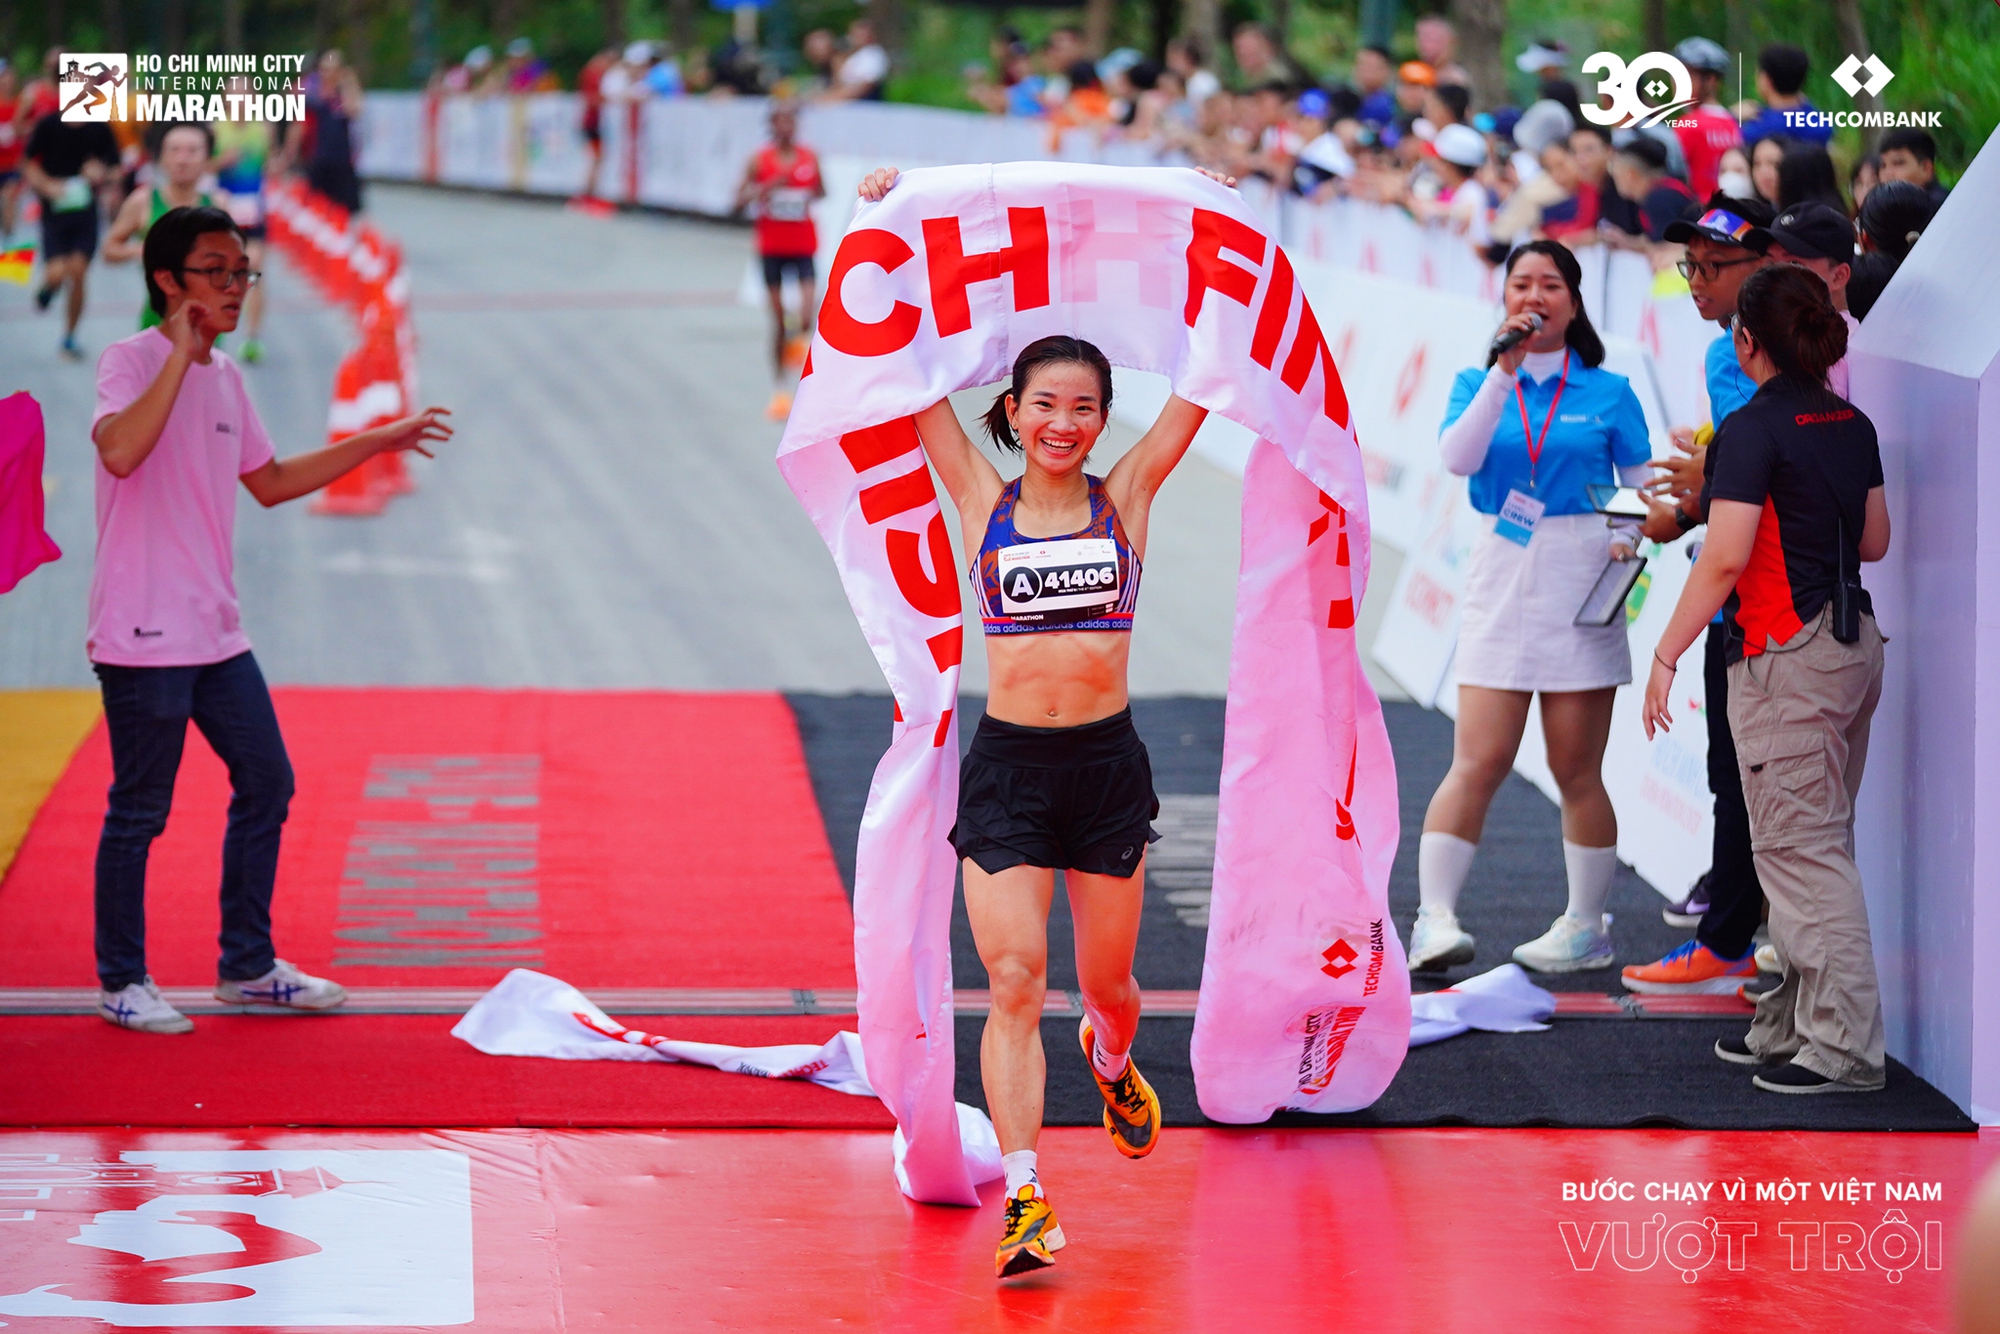 Các nữ Runner Việt Nam vượt trội trong giải Marathon Quốc tế thành phố Hồ Chí Minh Techcombank mùa thứ 6- Ảnh 1.